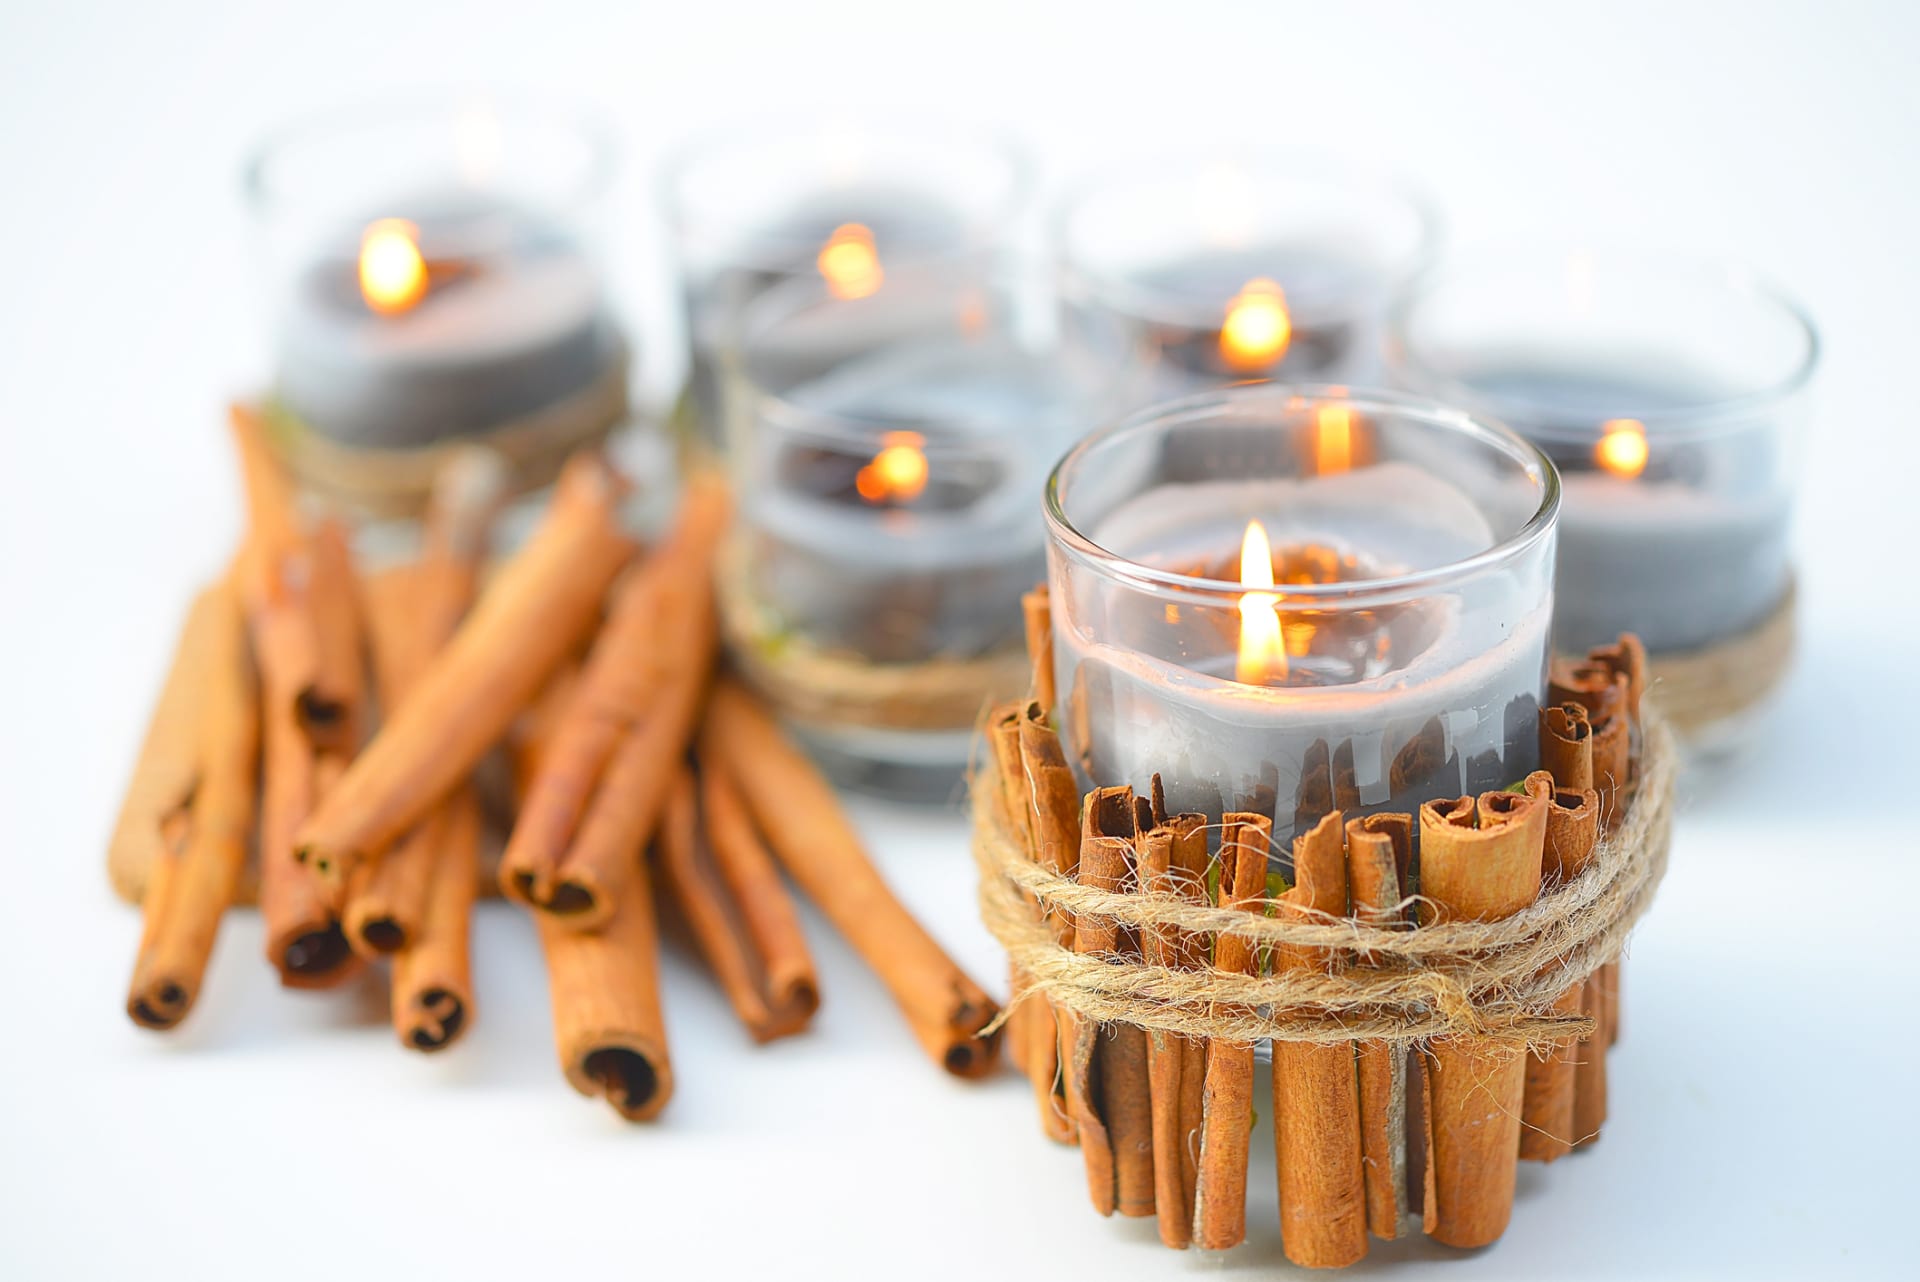 Podzimní svíčky: Skořice je skvělá nejen jako koření, ale i jako dekorace.  